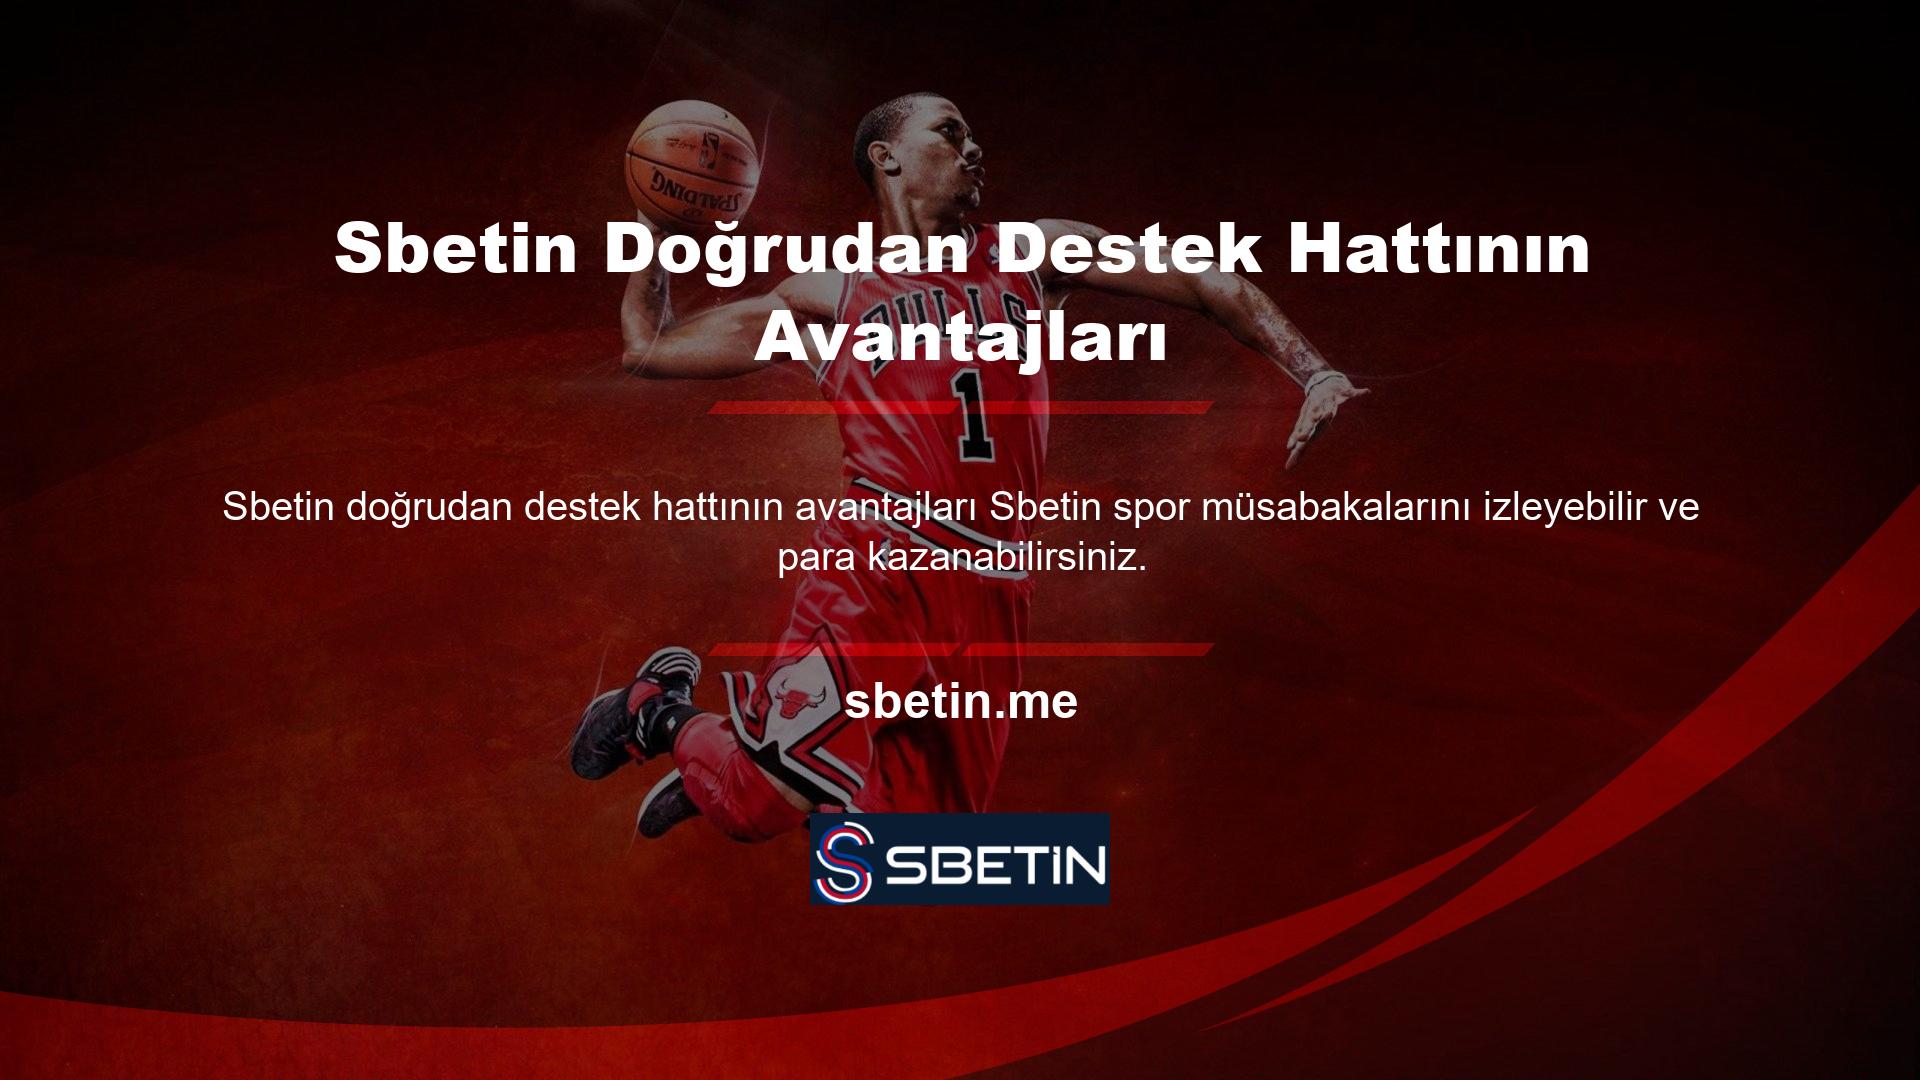 En son Sbetin ödüllerine ve maçlarına erişmek için bizi Twitter, Instagram ve diğer sosyal ağlarda takip edin